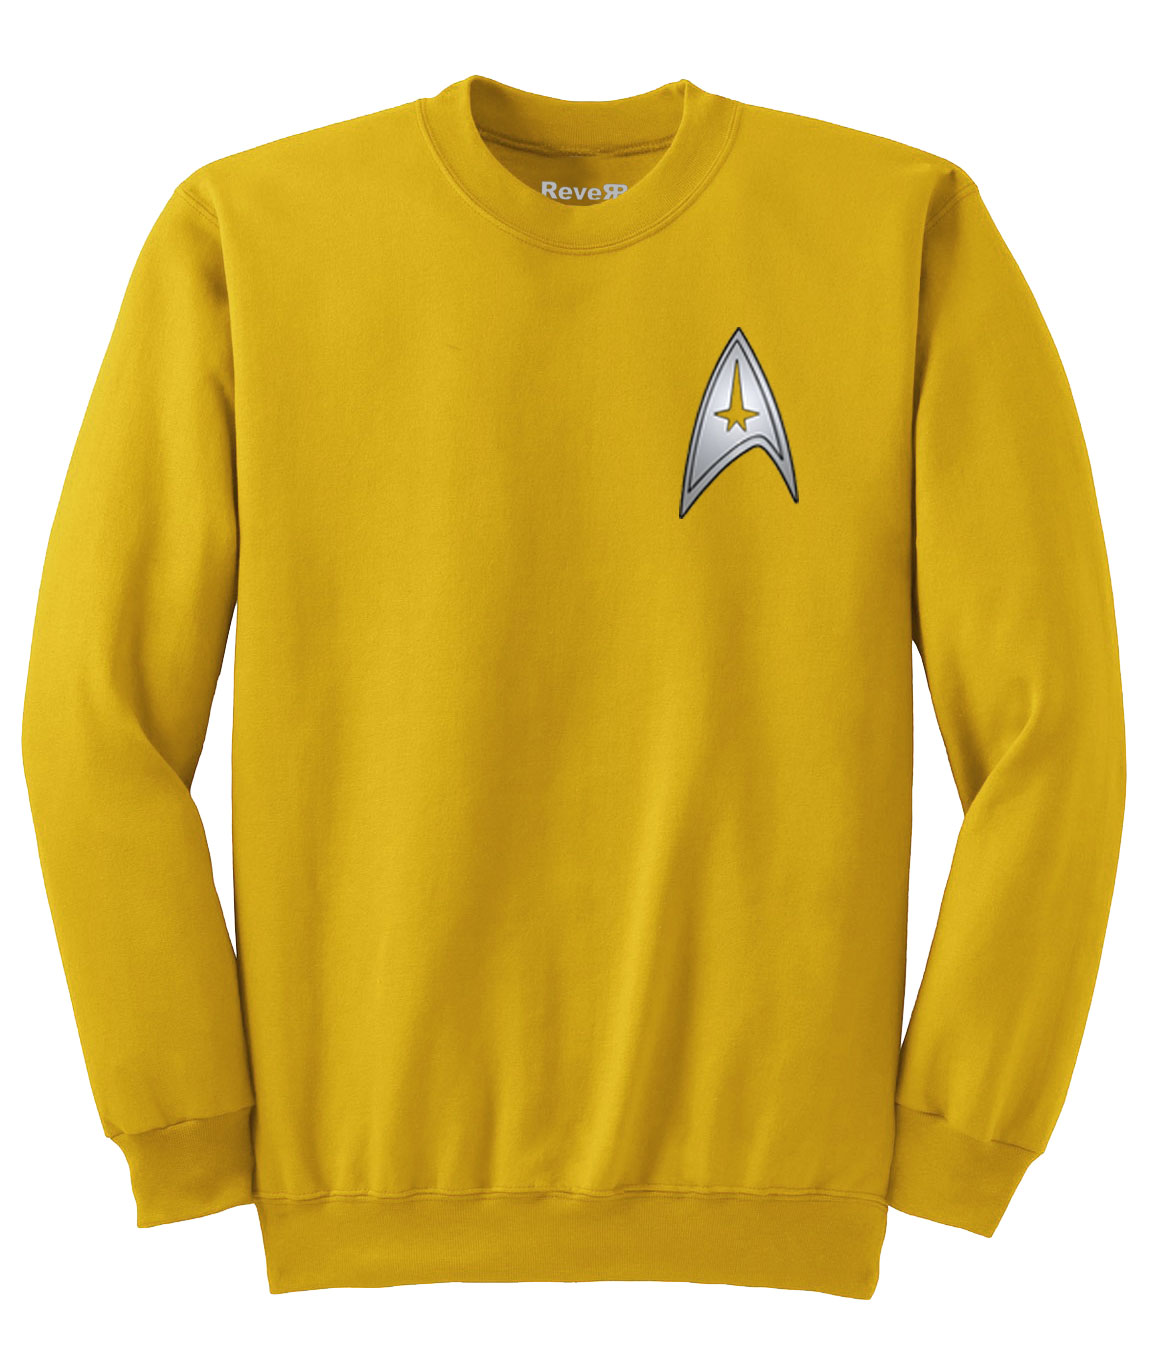 star trek sweater colors